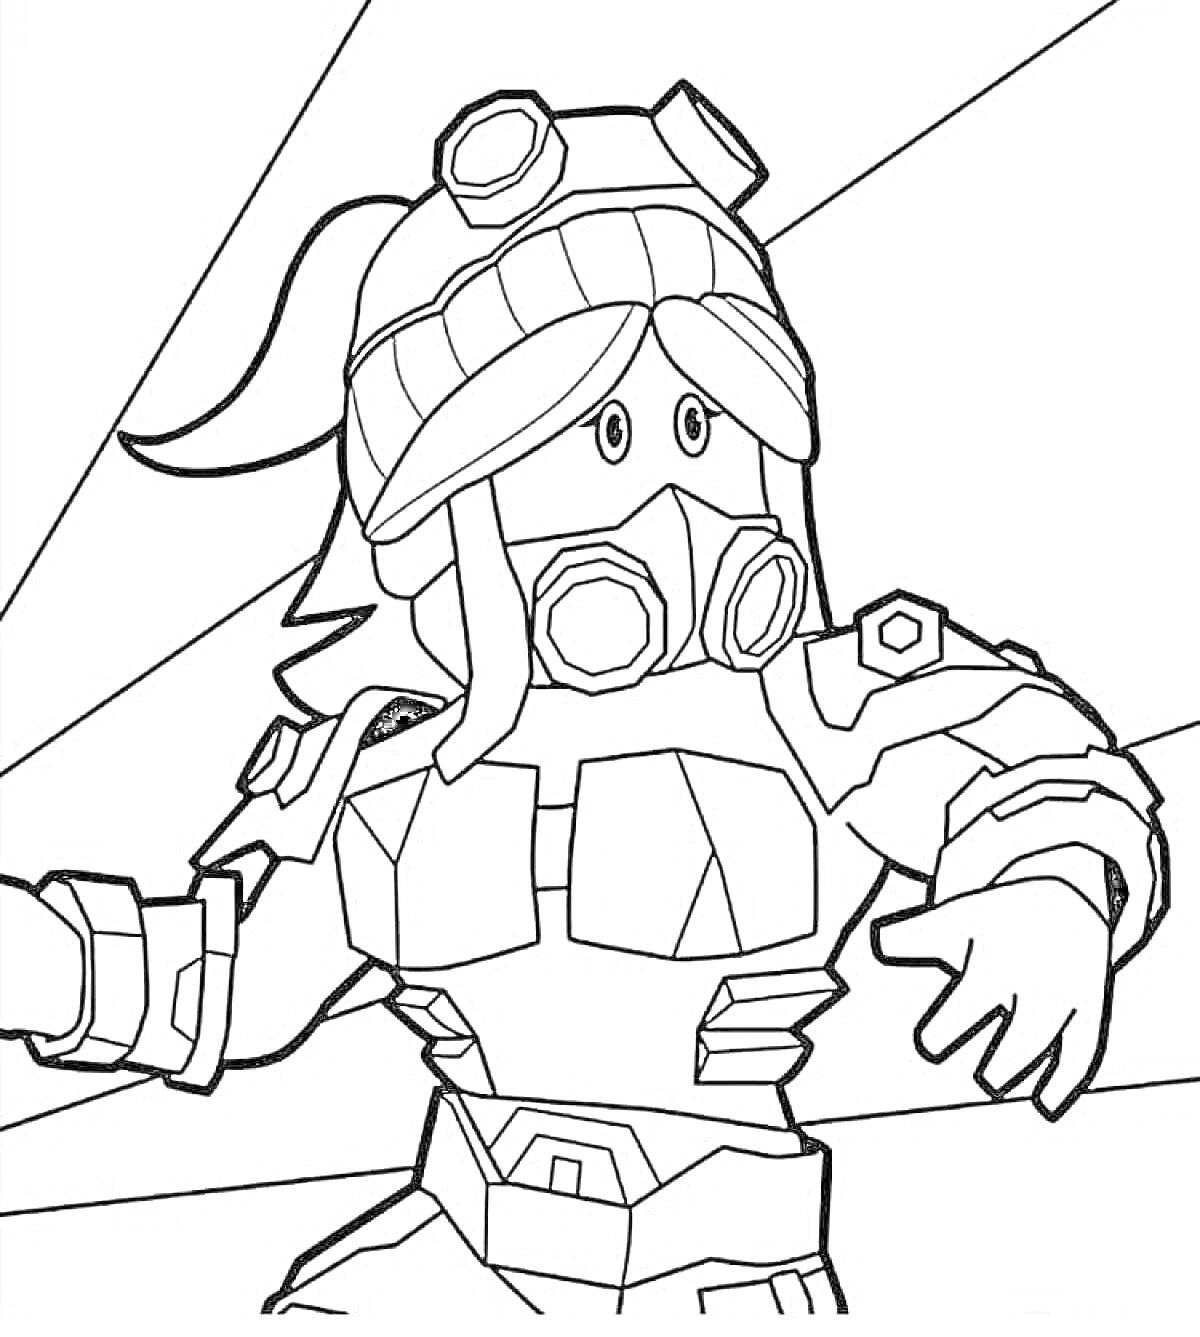 Раскраска Персонаж Роблокс в защитной маске и шлеме с очками, с поднятой рукой в броне, на фоне лучей света